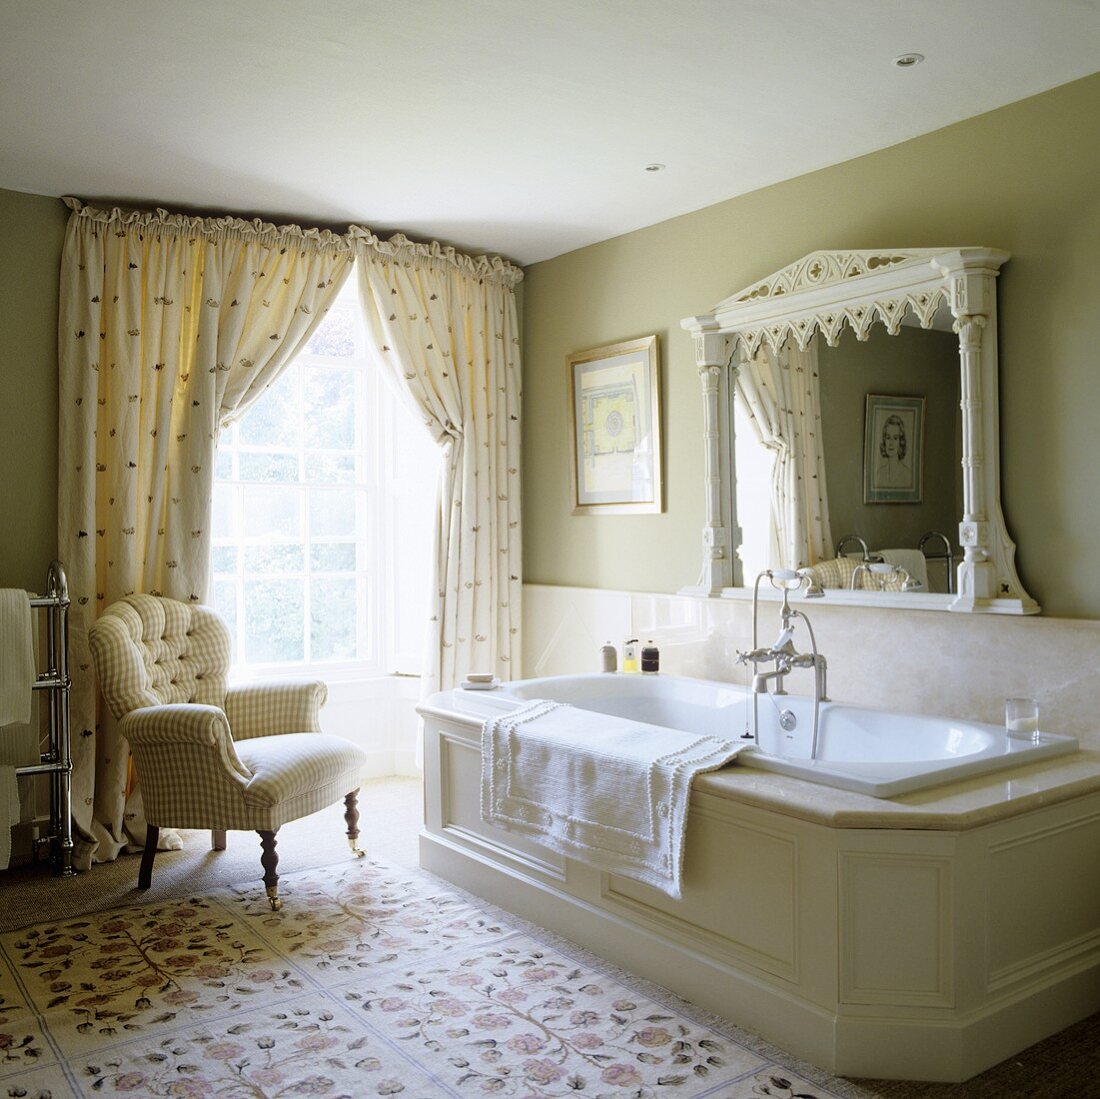 Grossräumiges Bad im traditionellen englischen Landhausstil mit raumhohem Fenster und gemütlichem Sessel